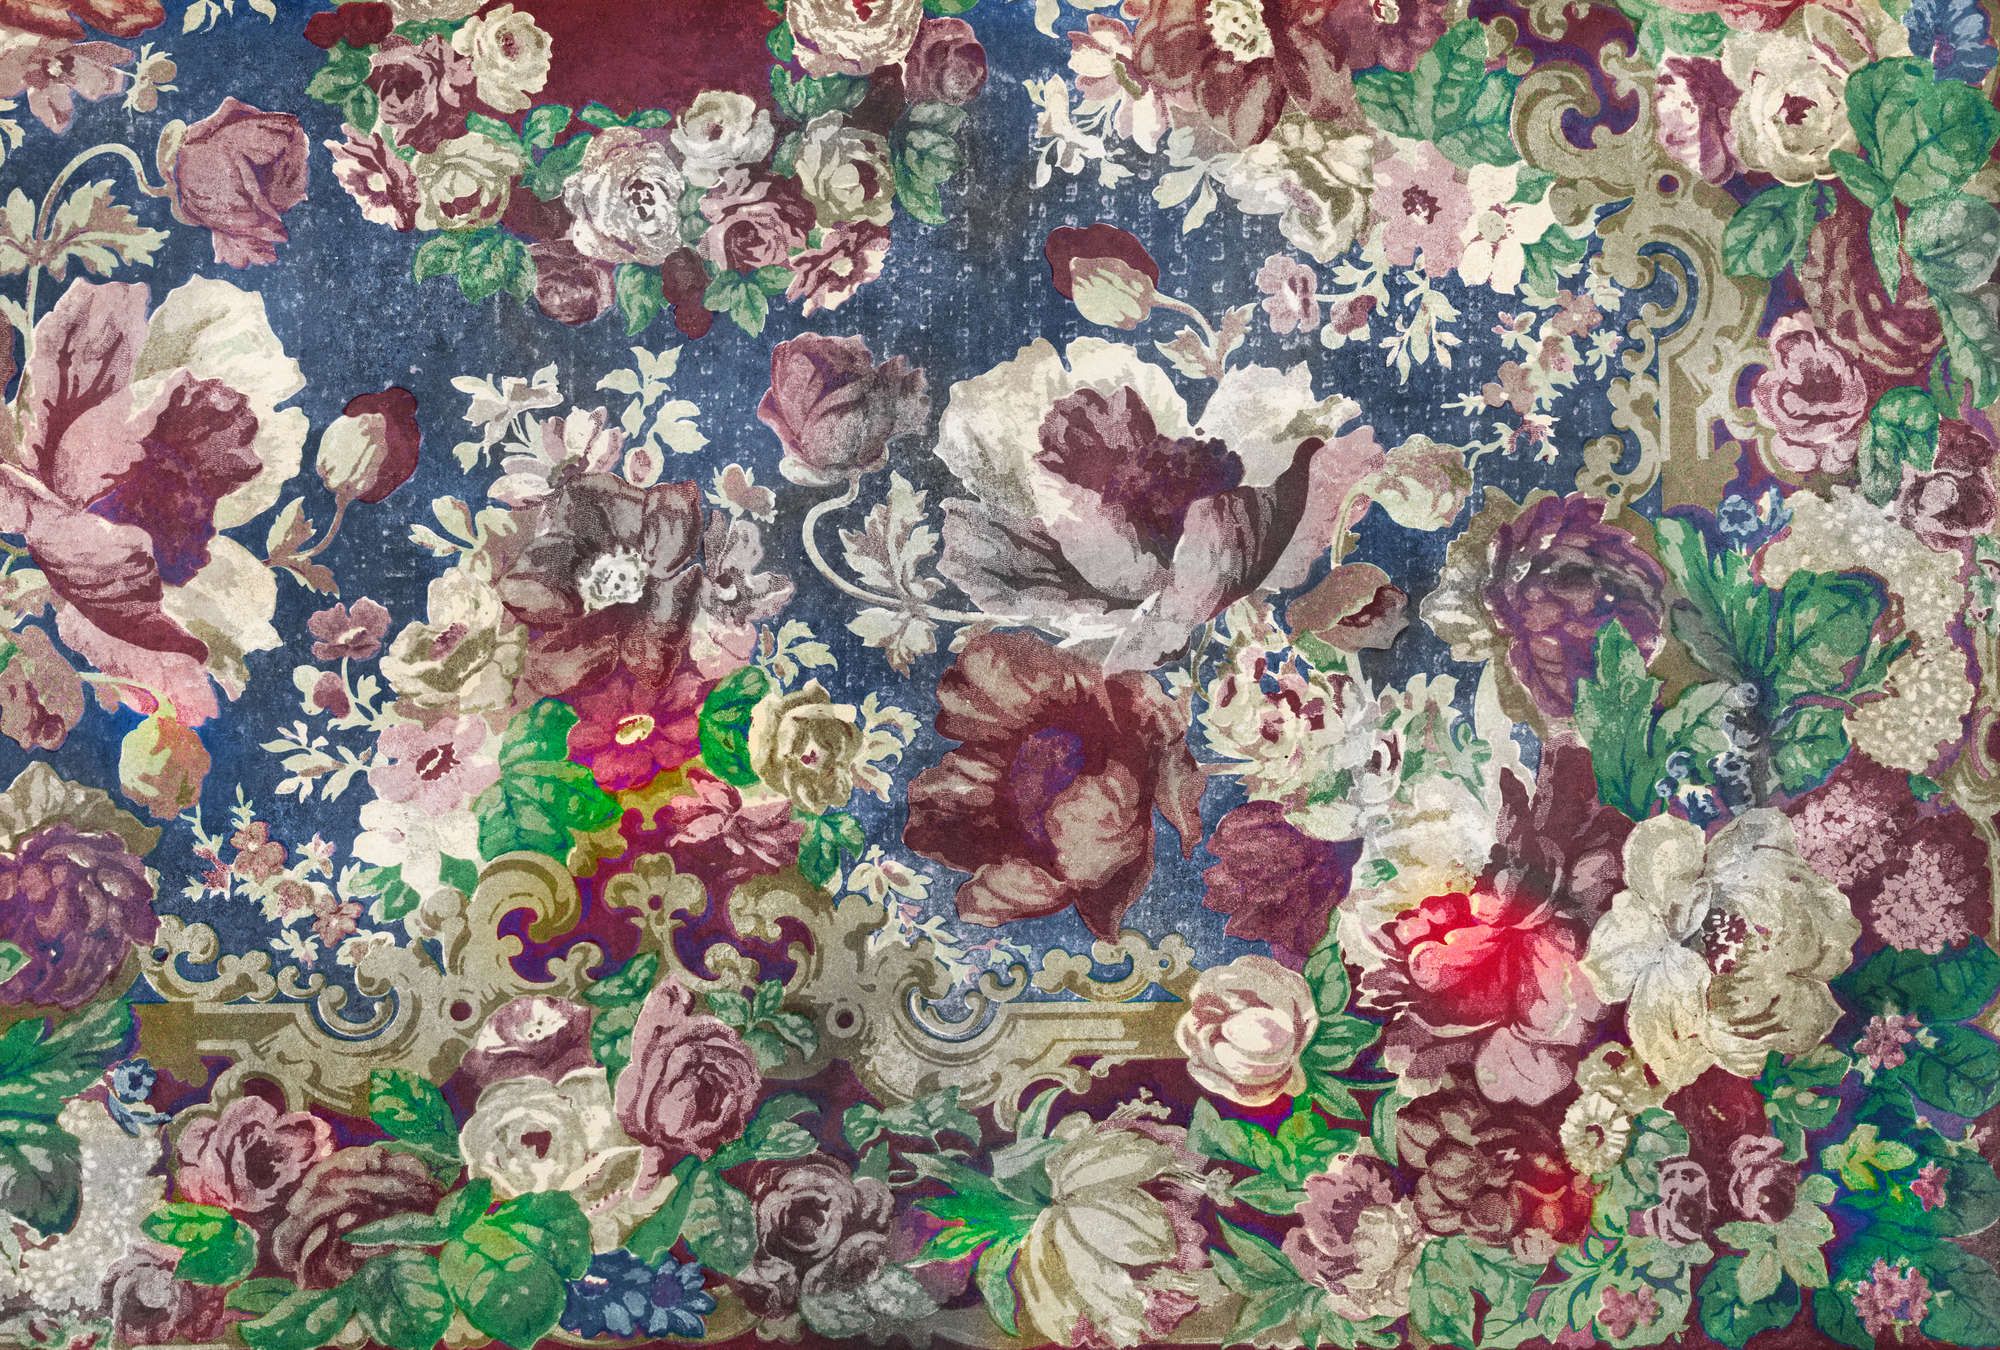             Fotomural »carmente 2« - Motivo floral de estilo clásico delante de textura de yeso vintage - Coloreado | Tela no tejida lisa, ligeramente nacarada y brillante
        